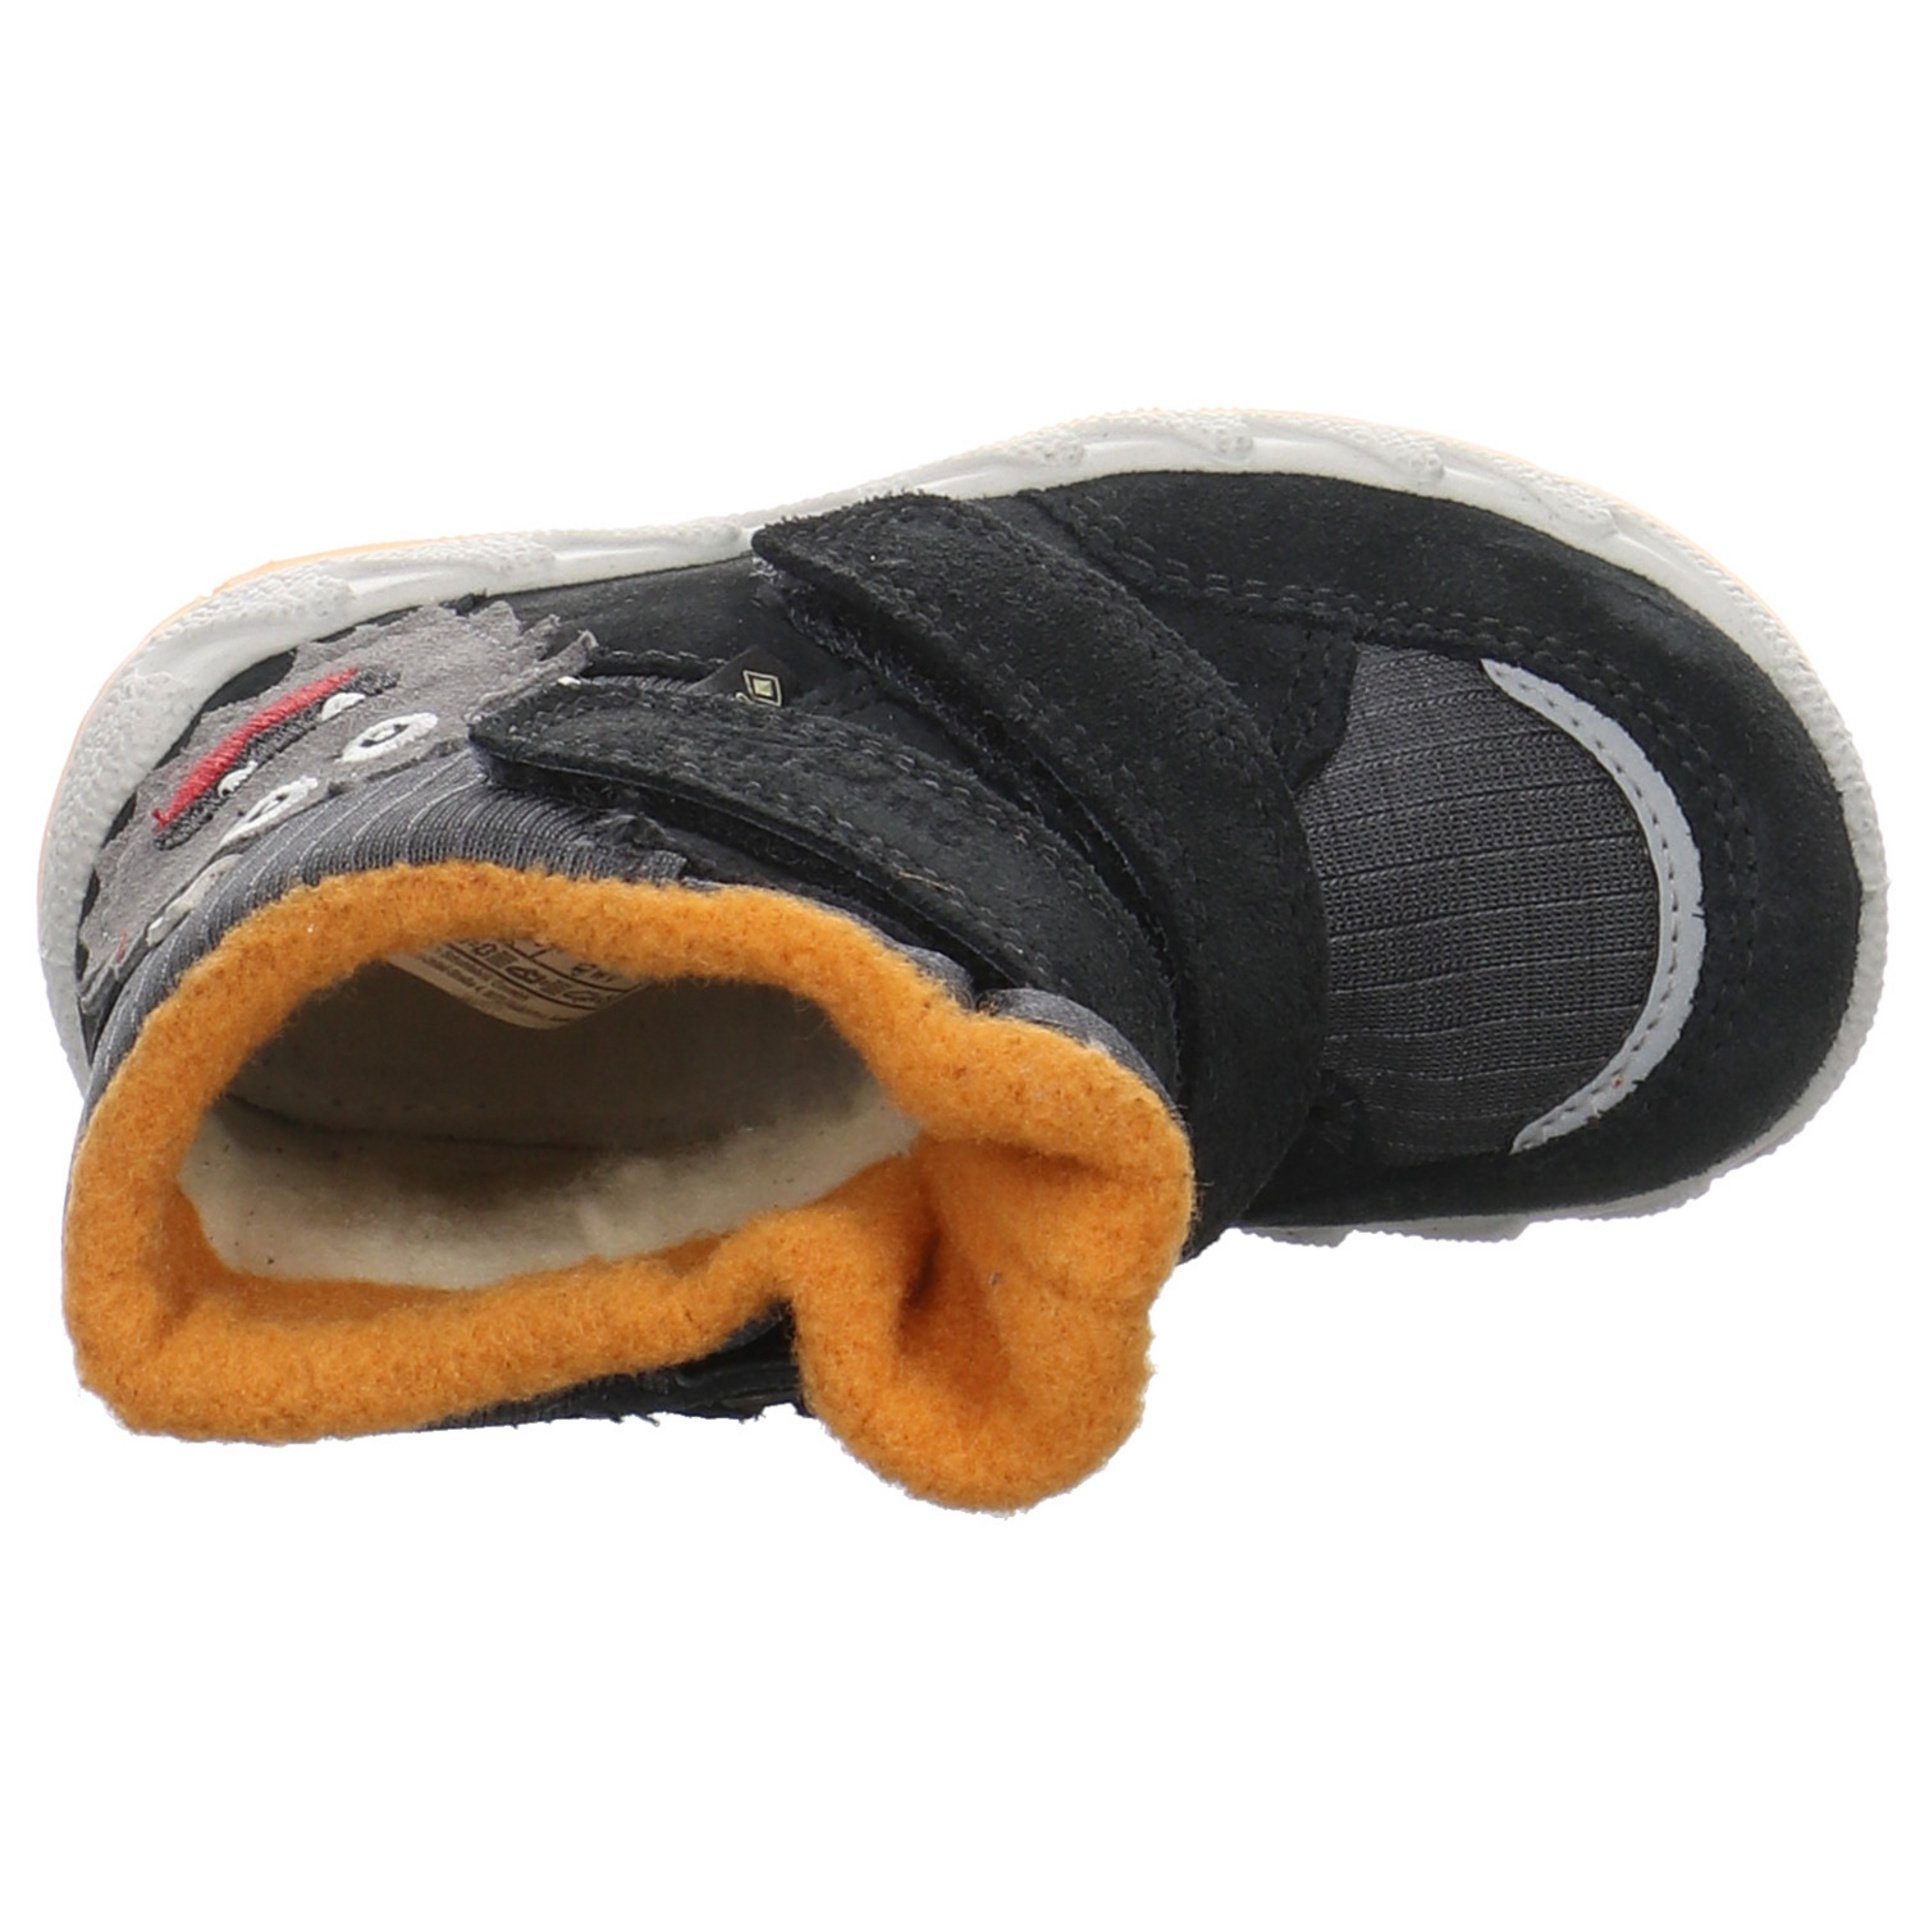 Superfit Baby Icebird Lauflernschuh grau Leder-/Textilkombination Krabbelschuhe Lauflernschuhe Boots gelb